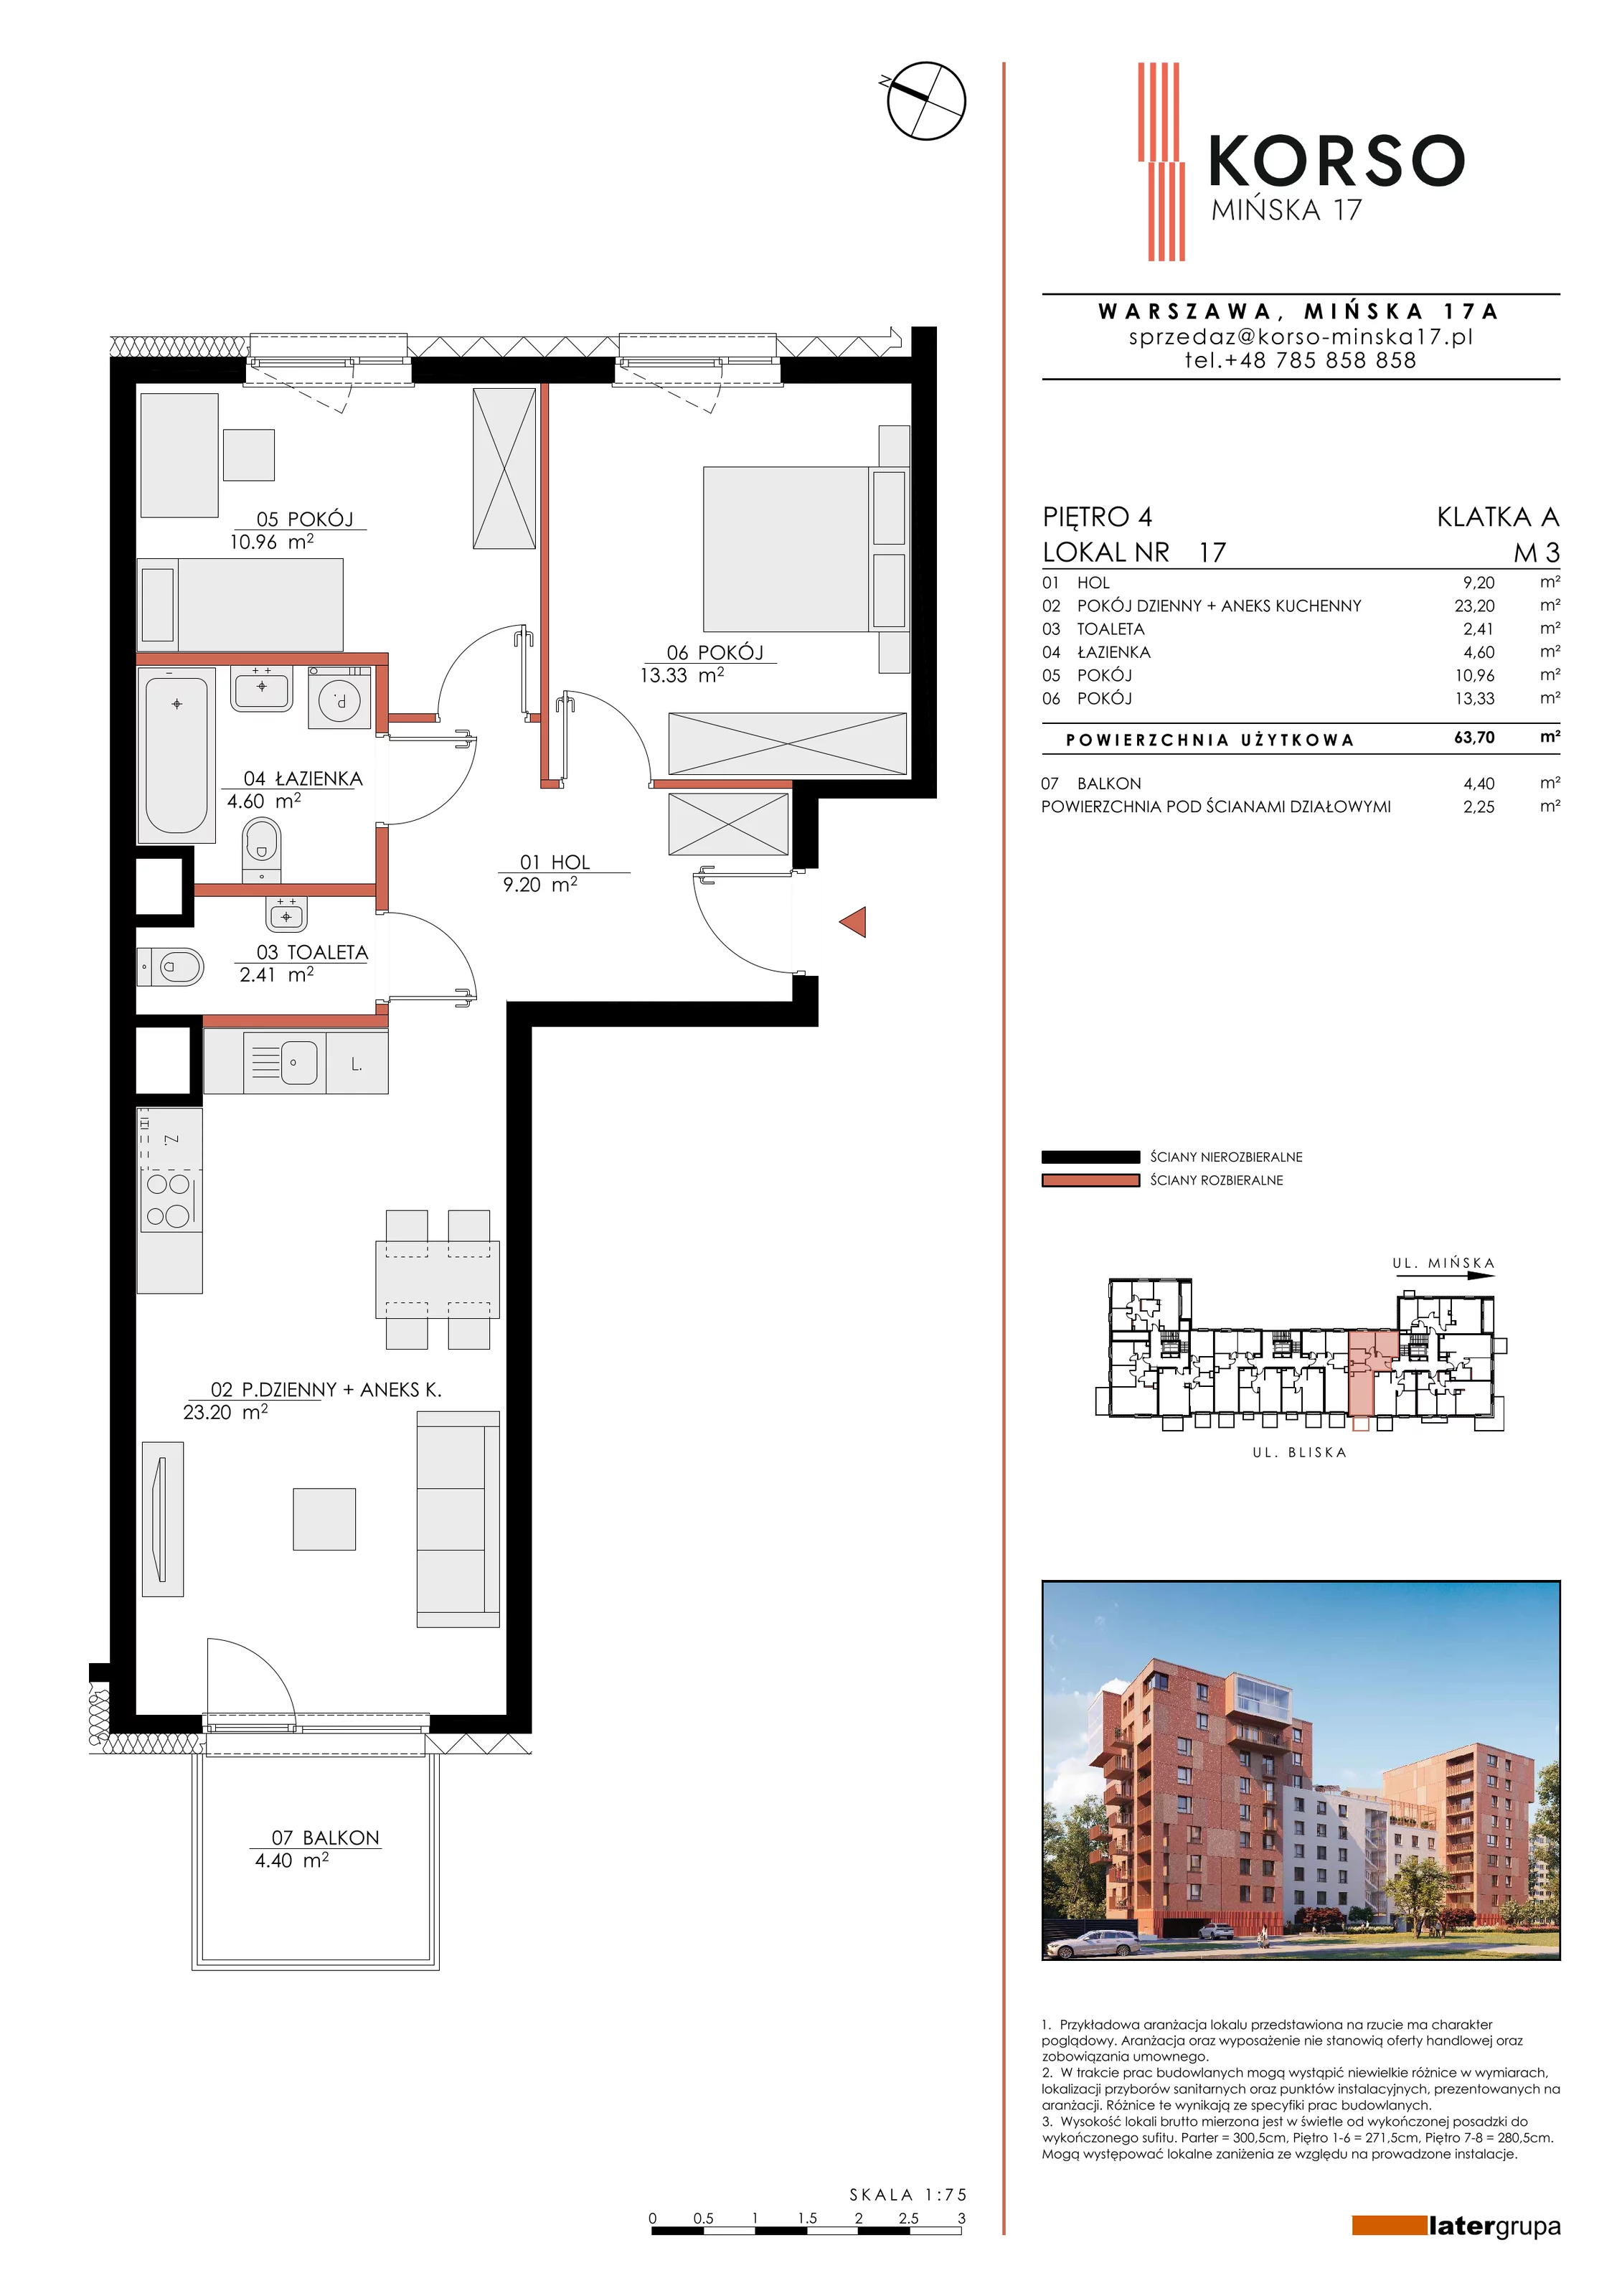 Mieszkanie 63,70 m², piętro 4, oferta nr 17, KORSO Mińska 17, Warszawa, Praga Południe, Kamionek, ul. Mińska 17